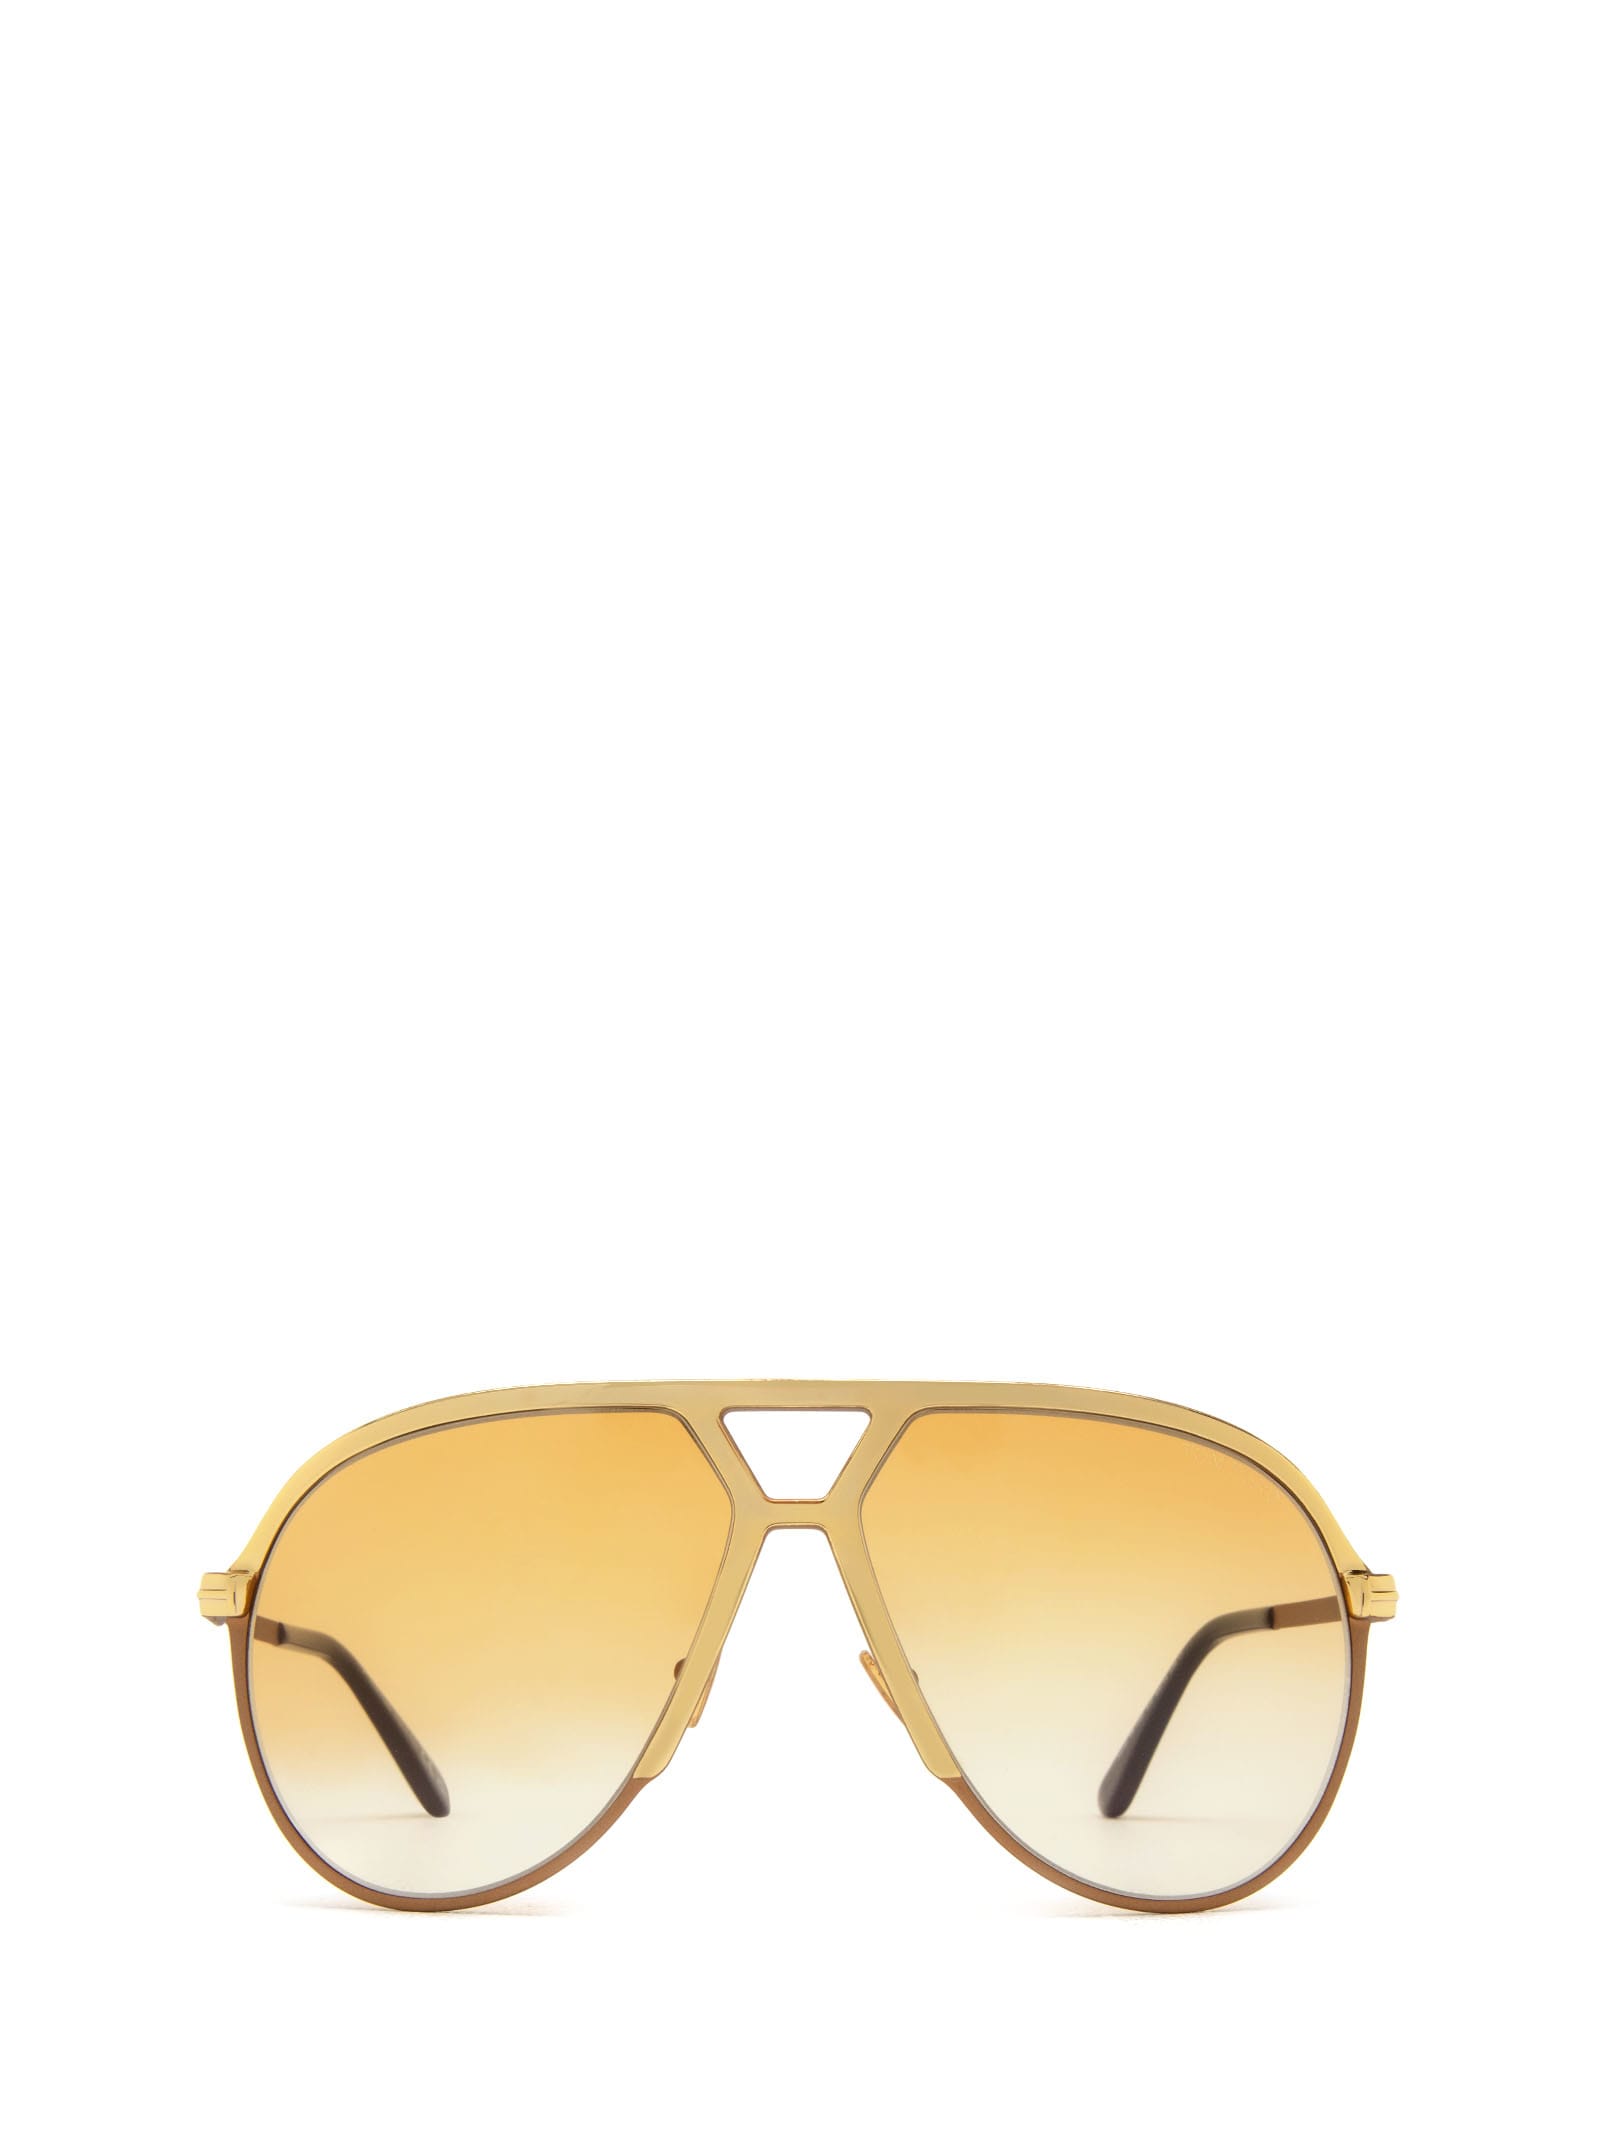 Ft1060 Gold Sunglasses